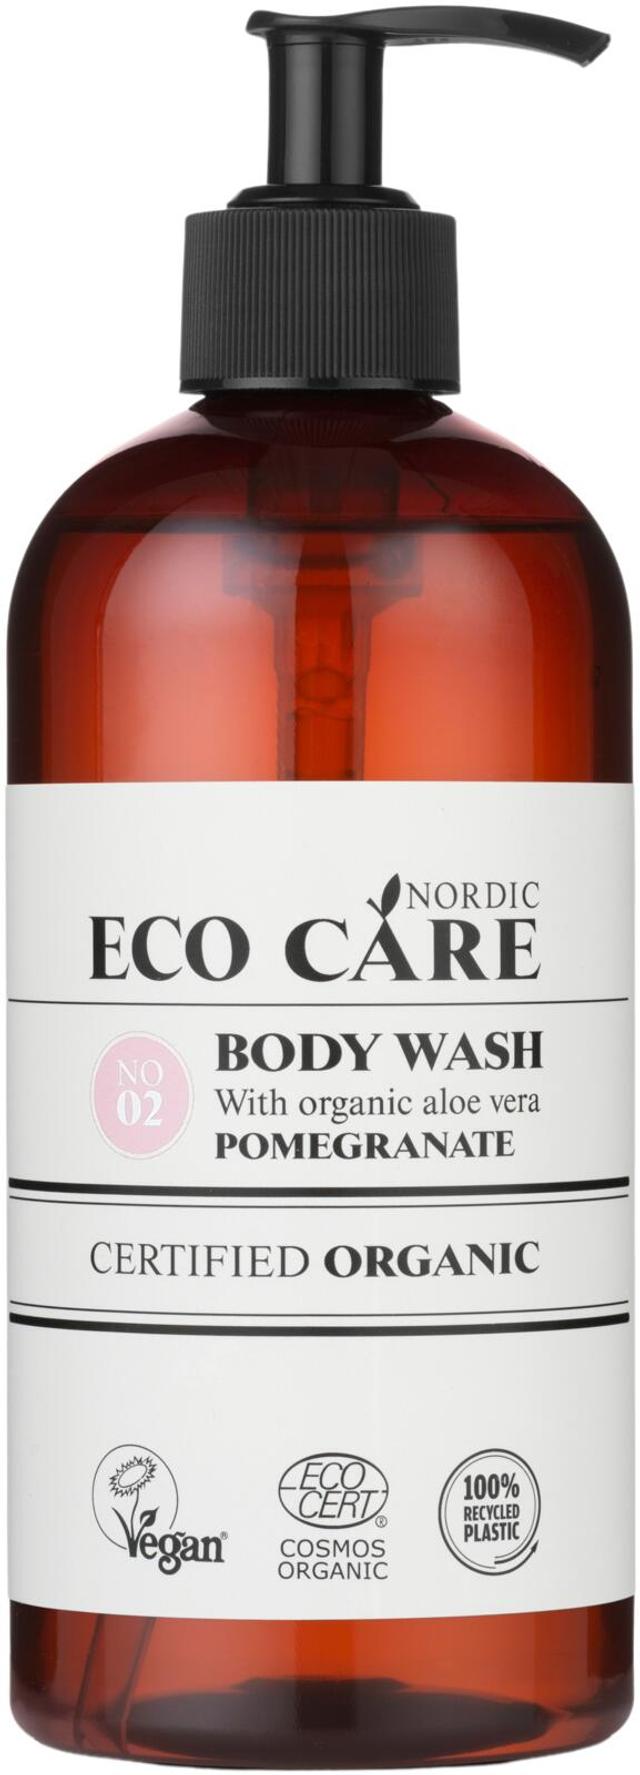 Ecocare cosmosort bodywash pomegranate